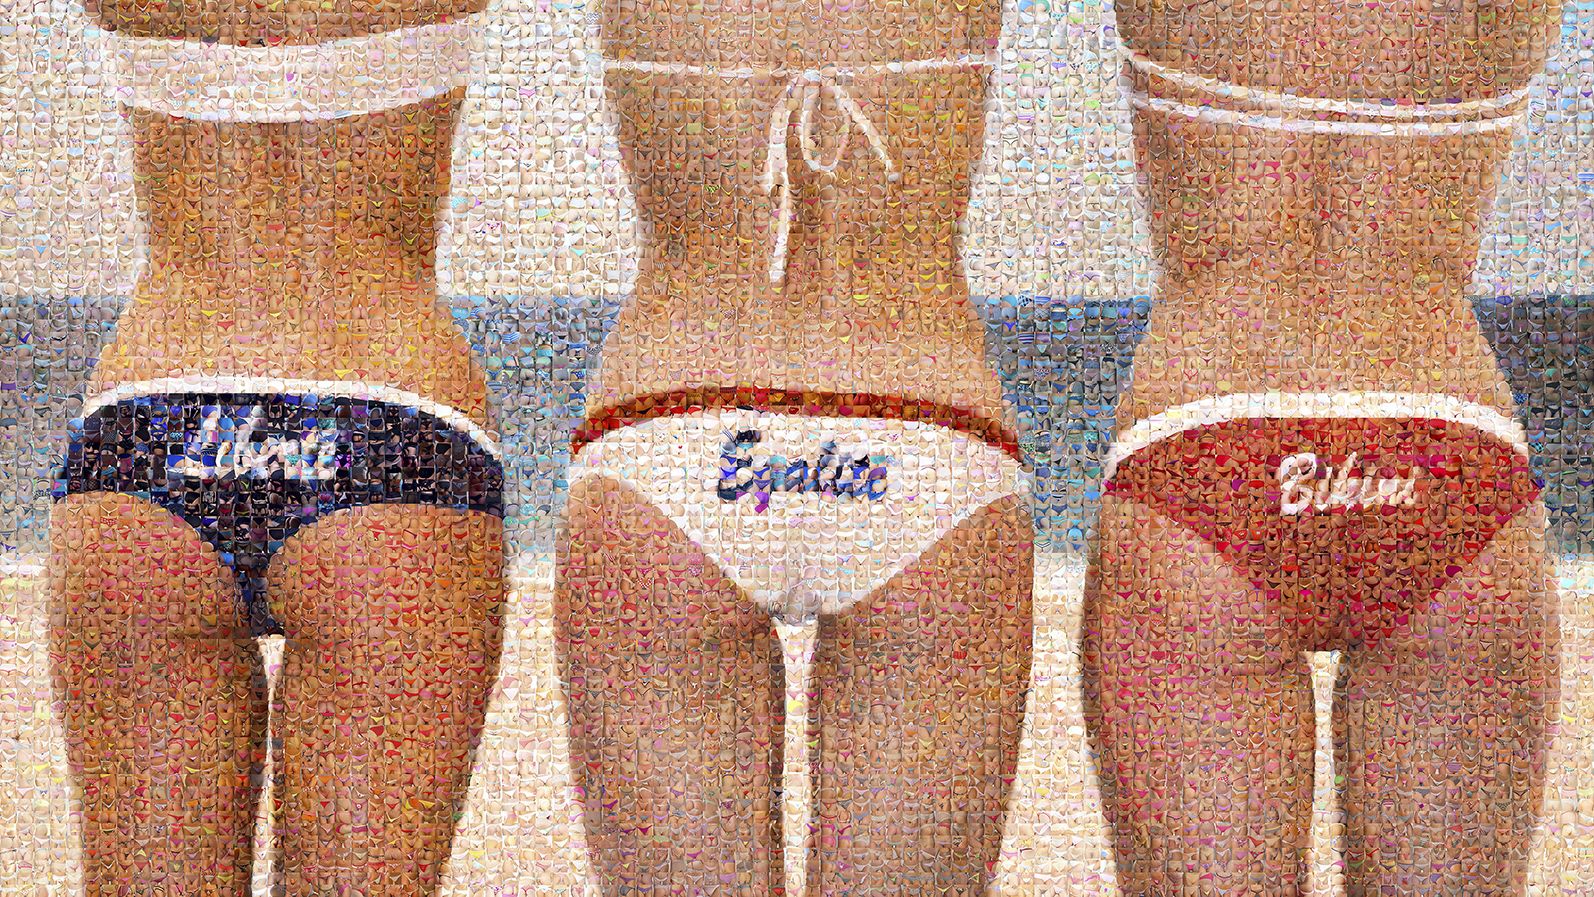 Liberté - Égalité - Bikini